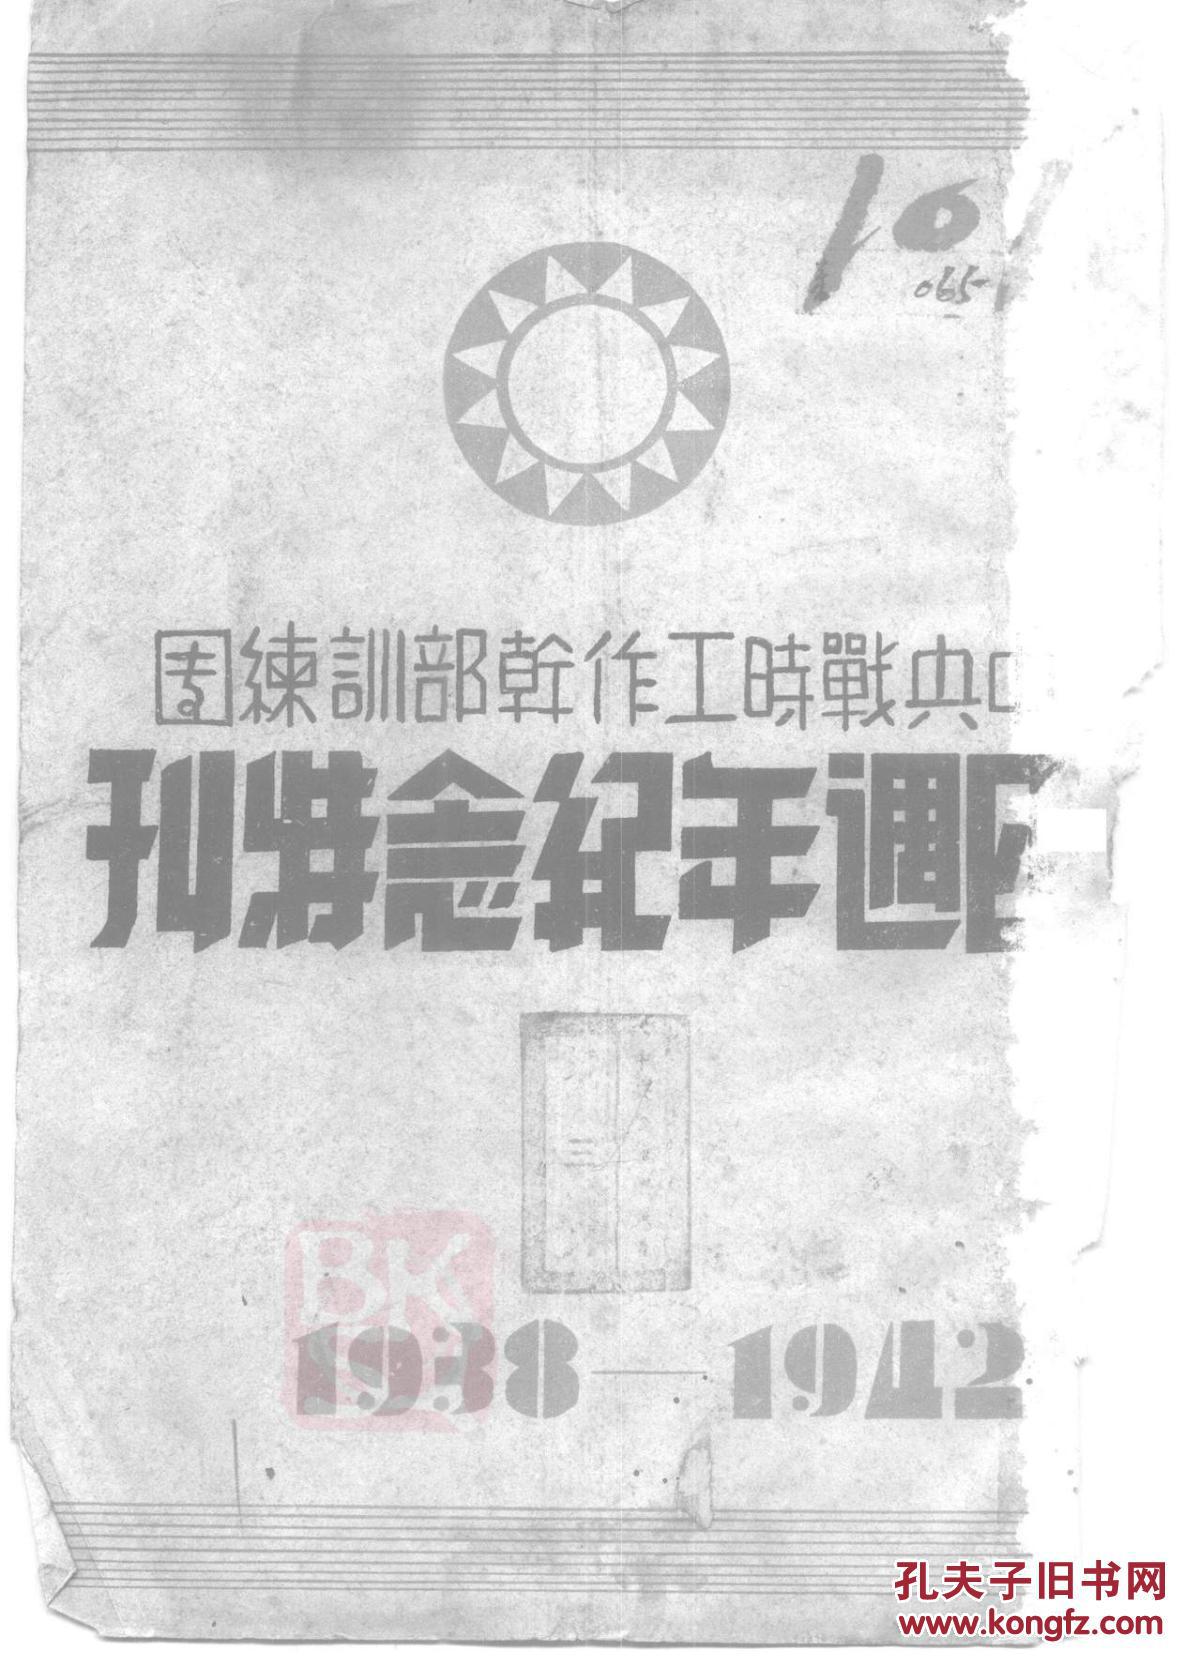 中央战时工作干部训练团四周年纪念特刊(复印